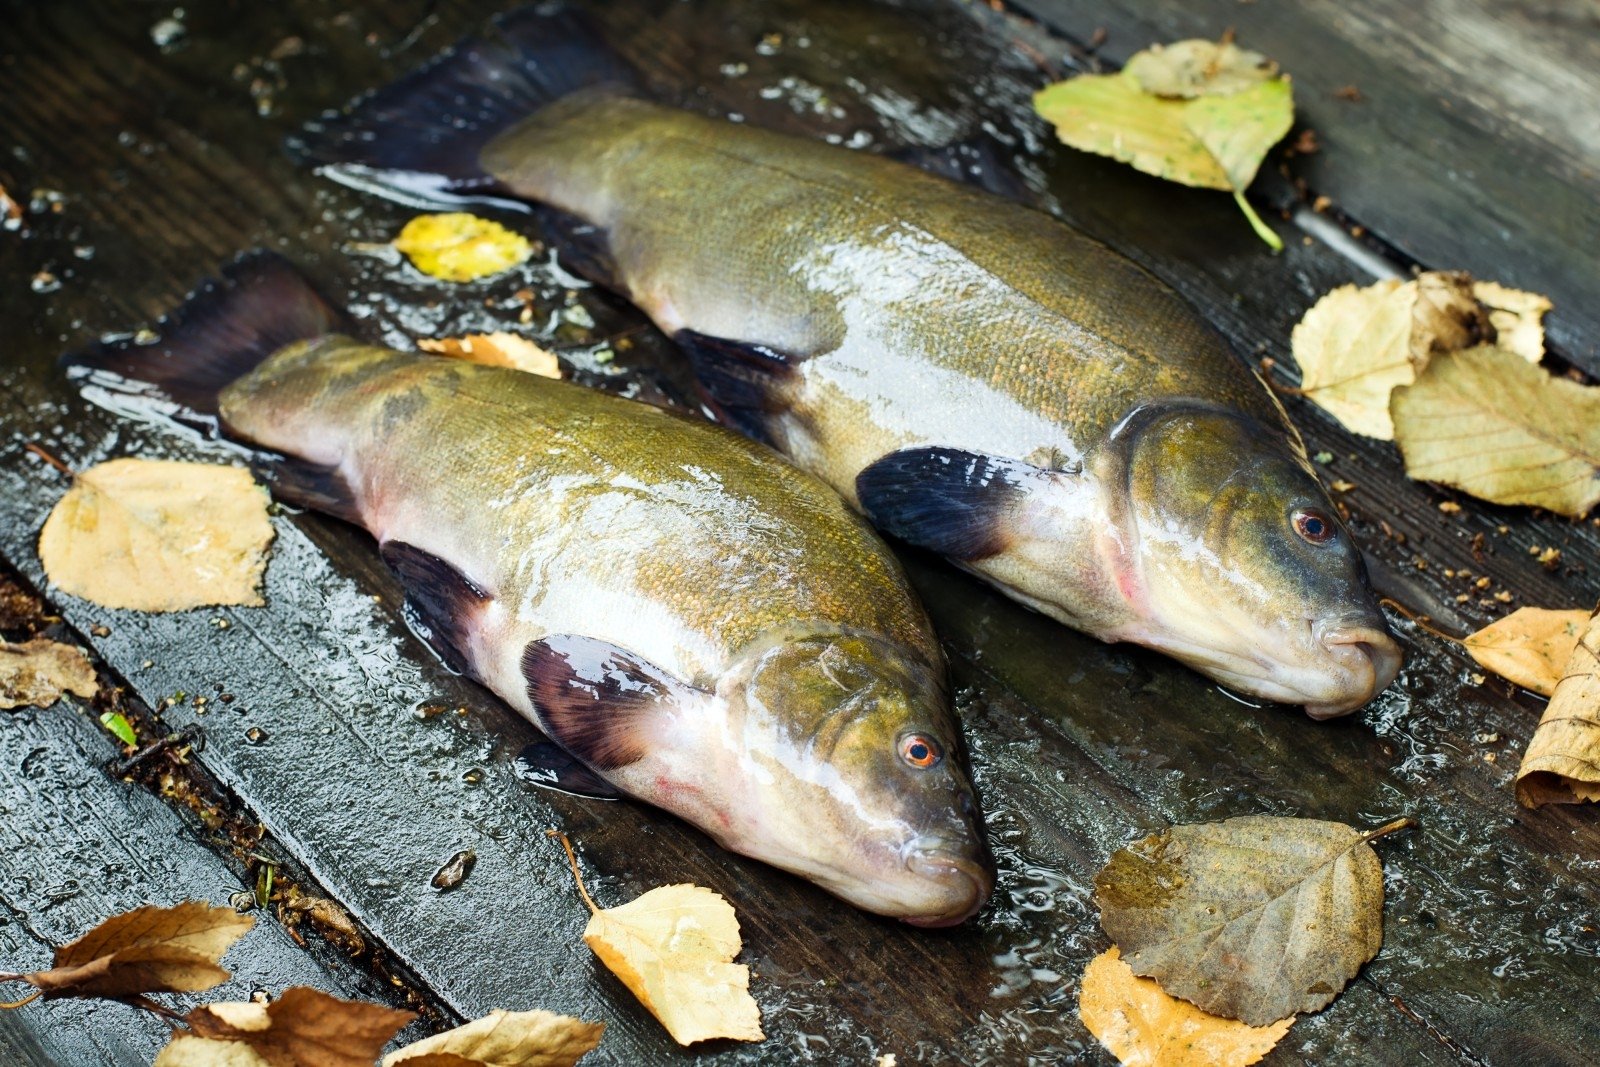 Рыба линь: описание, ловля, полезные свойства рыбы и рецепты приготовления блюд